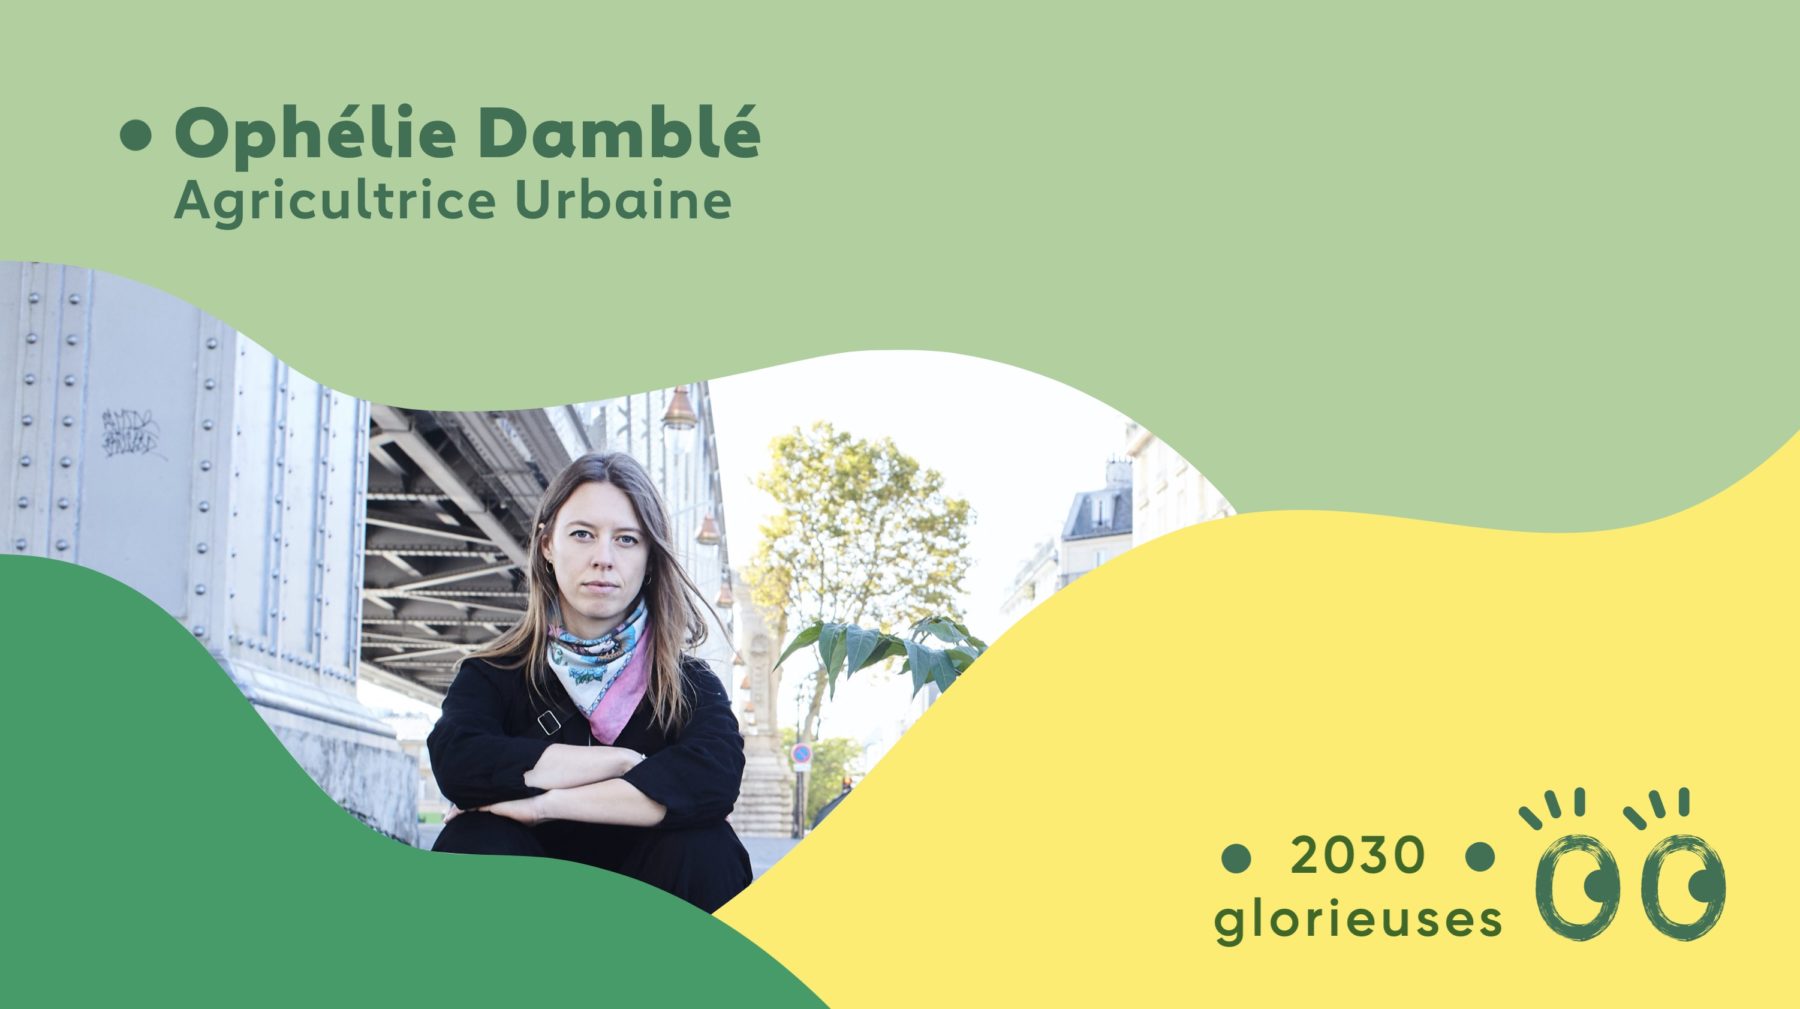 2030 Glorieuses #10 : Ophélie Damblé : "La nature sera toujours là pour prendre le dessus"